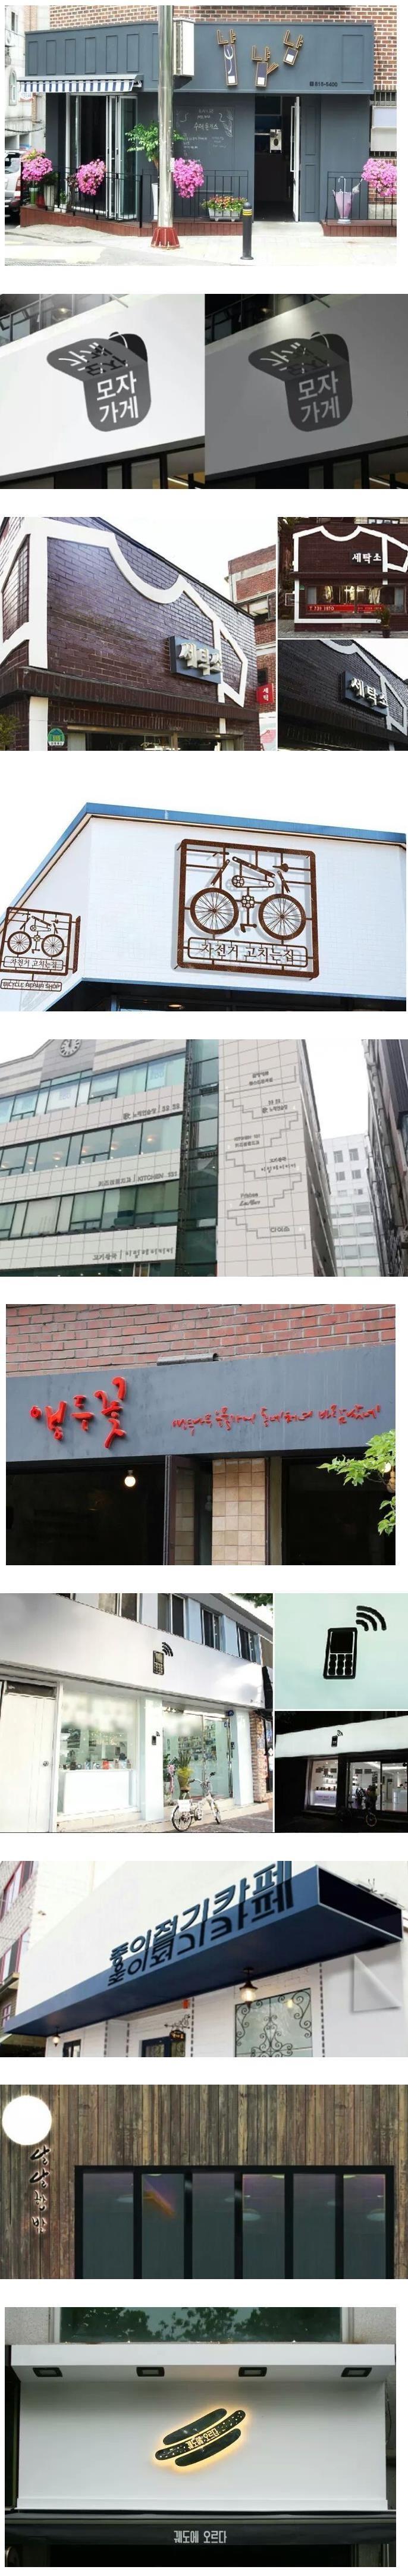 서울시에서 선정한 예쁜 한글간판 가게들 사진